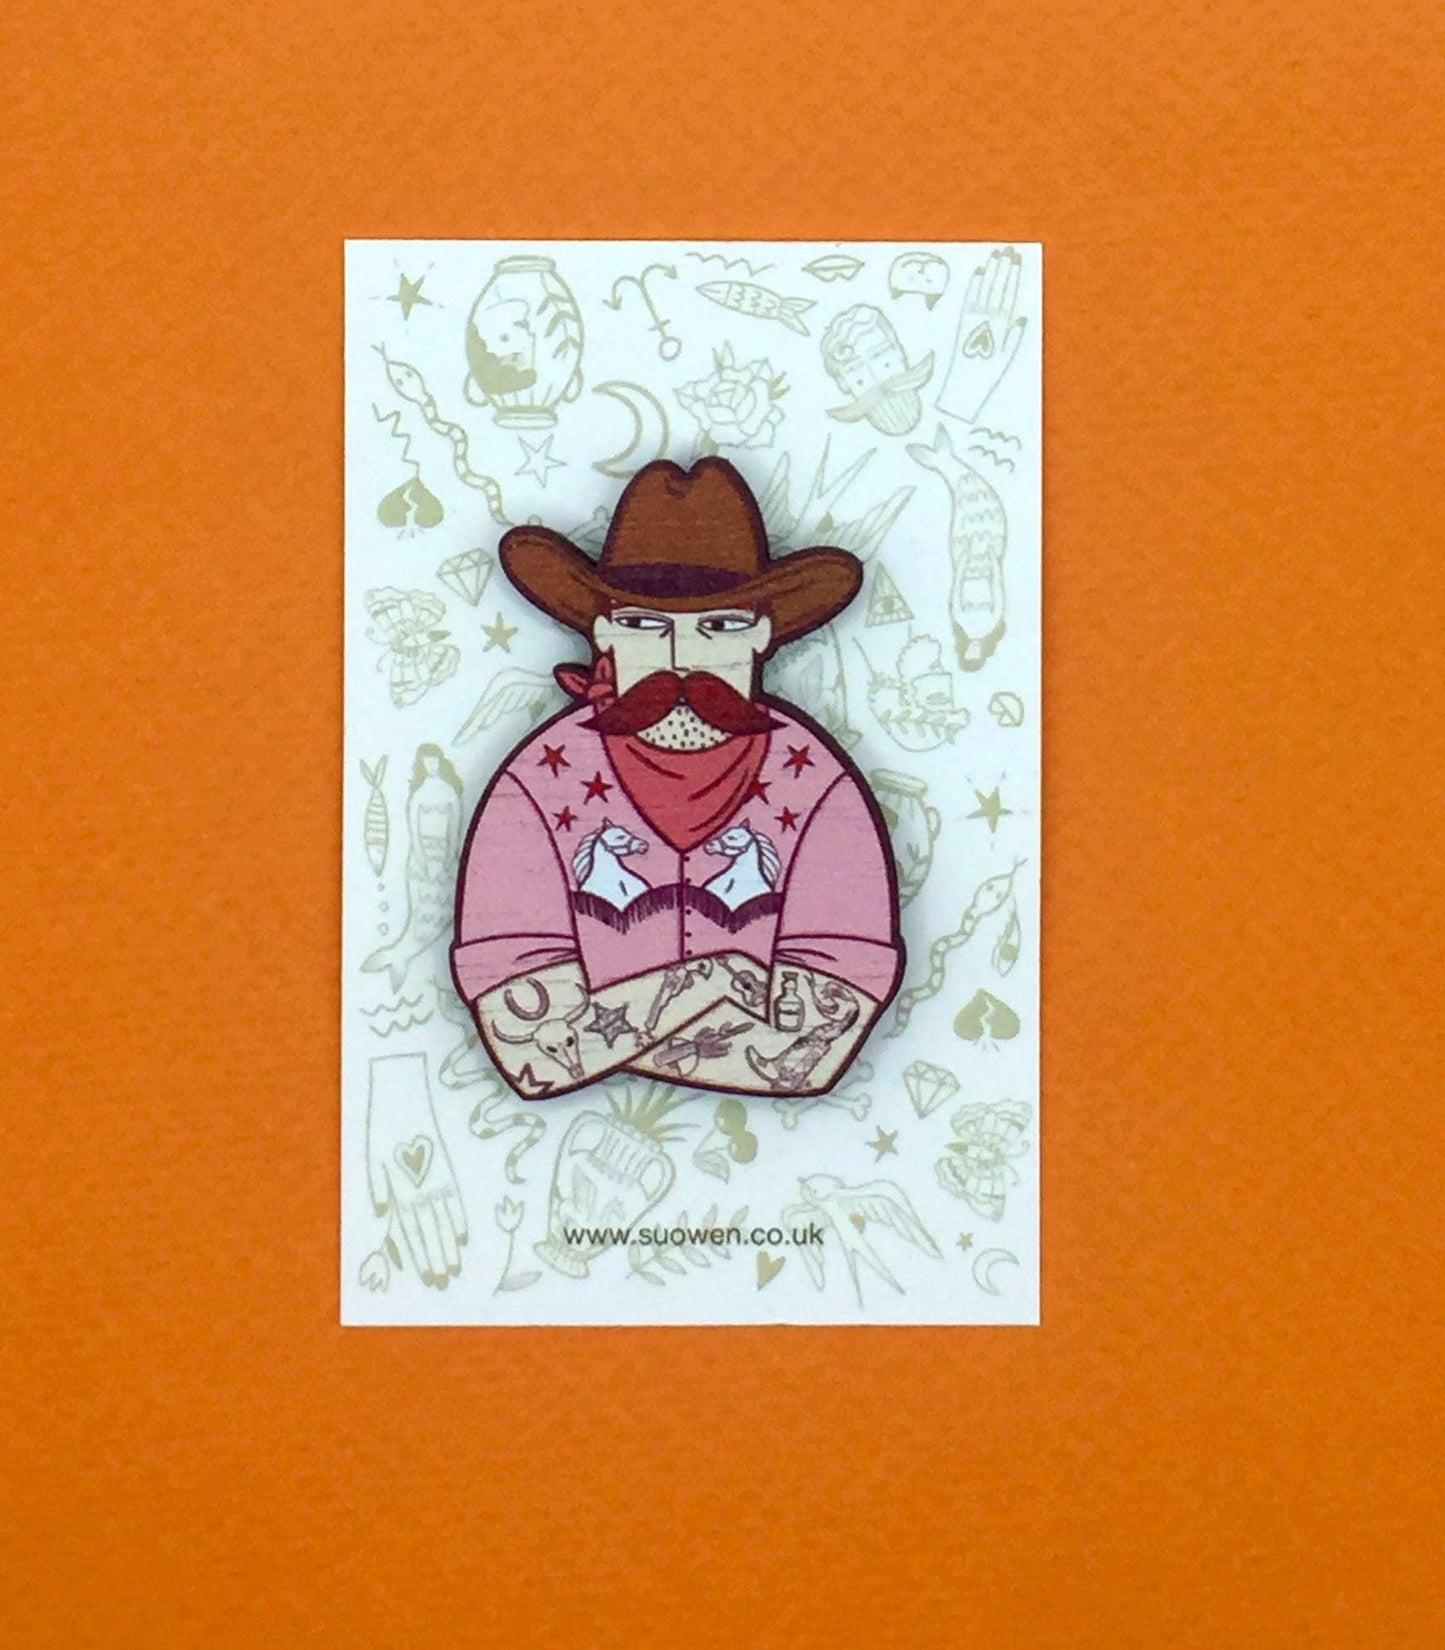 Cowboy Pin Brooch/Cowboy Pin Badge